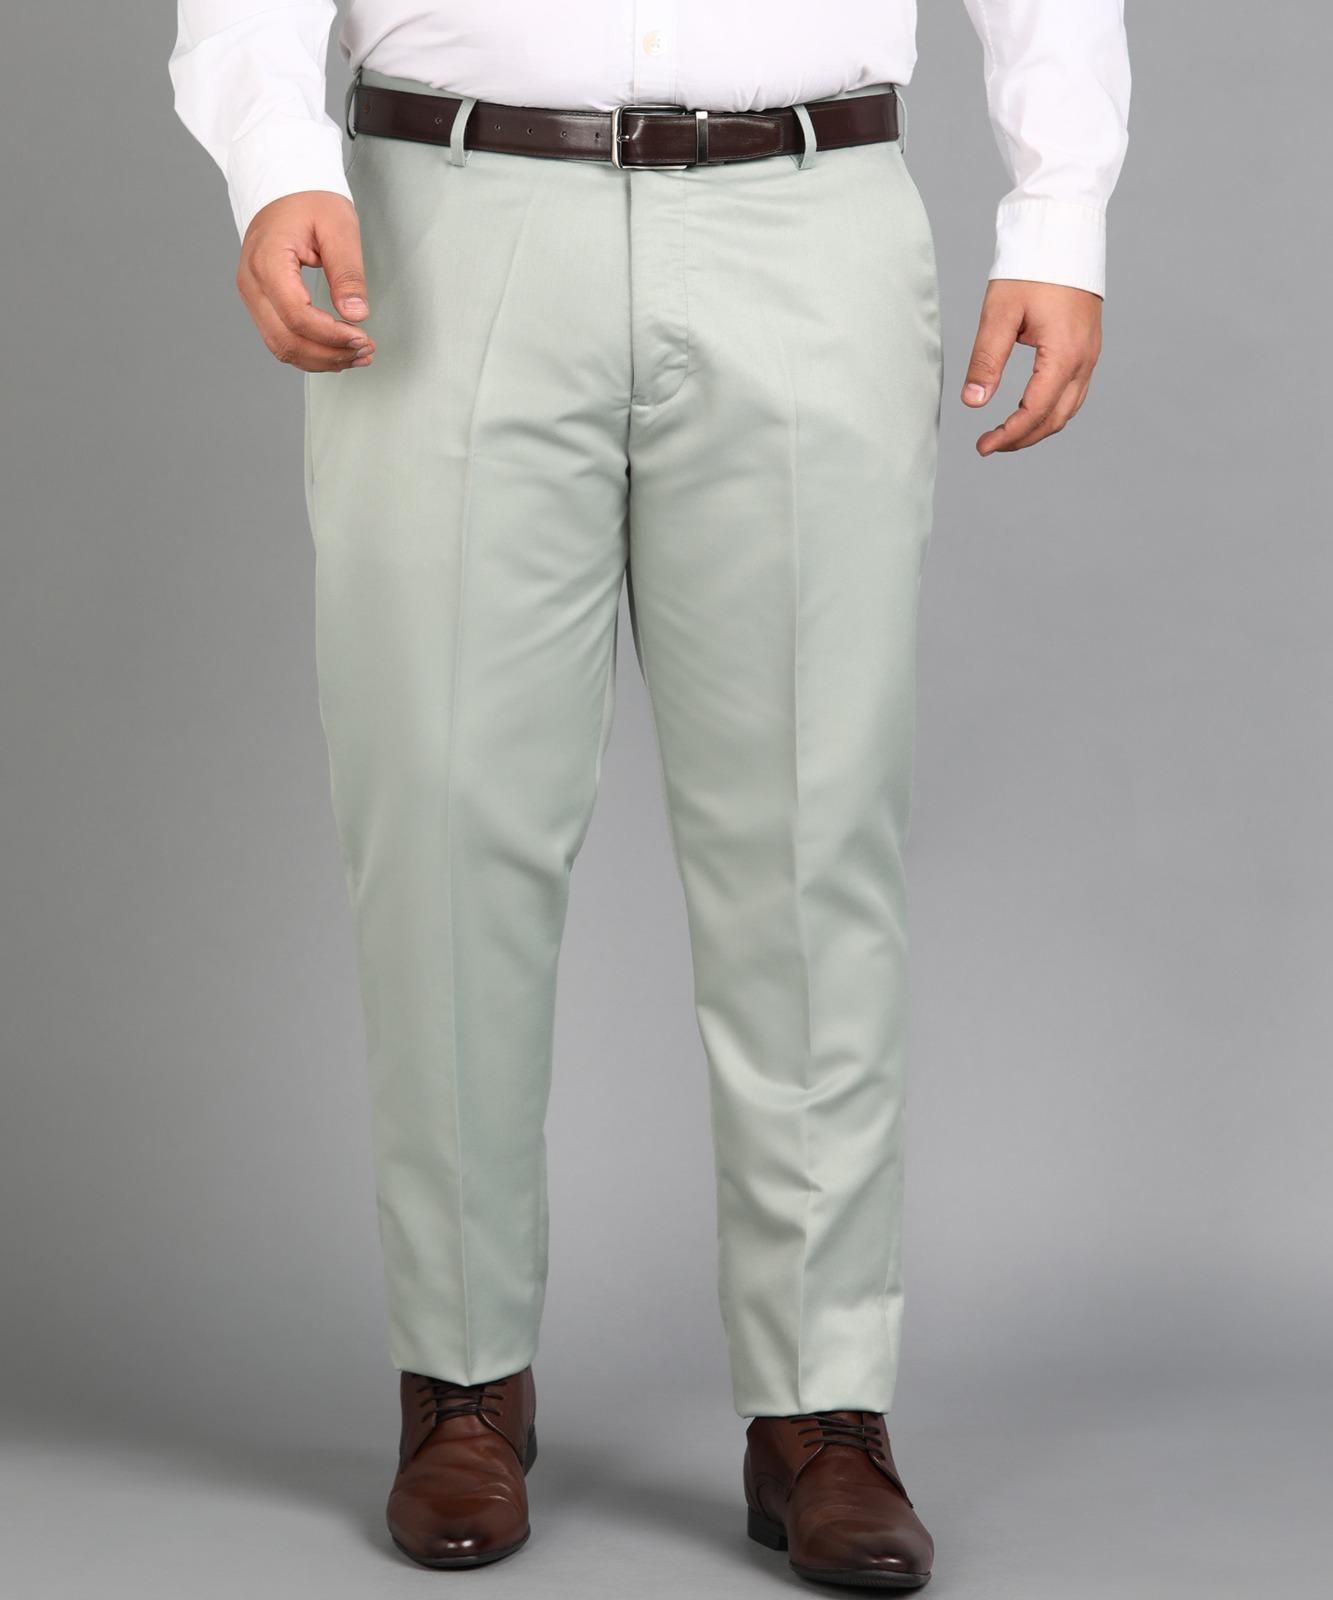 Men's Formal Trouser